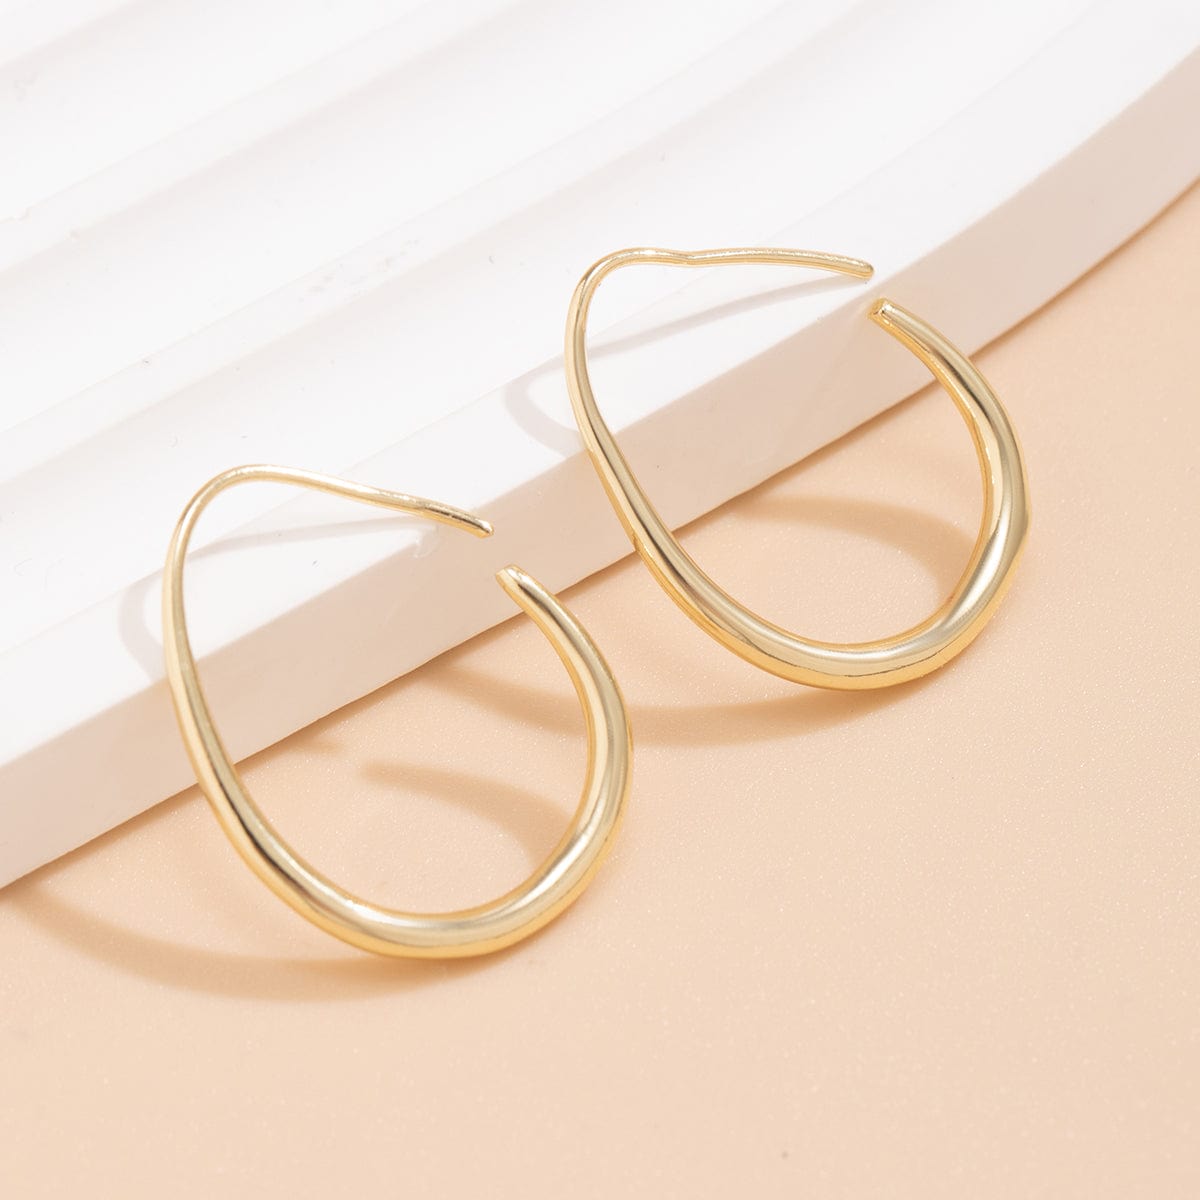 Minimalist Gold Plated Oval Hoop Earrings - ArtGalleryZen